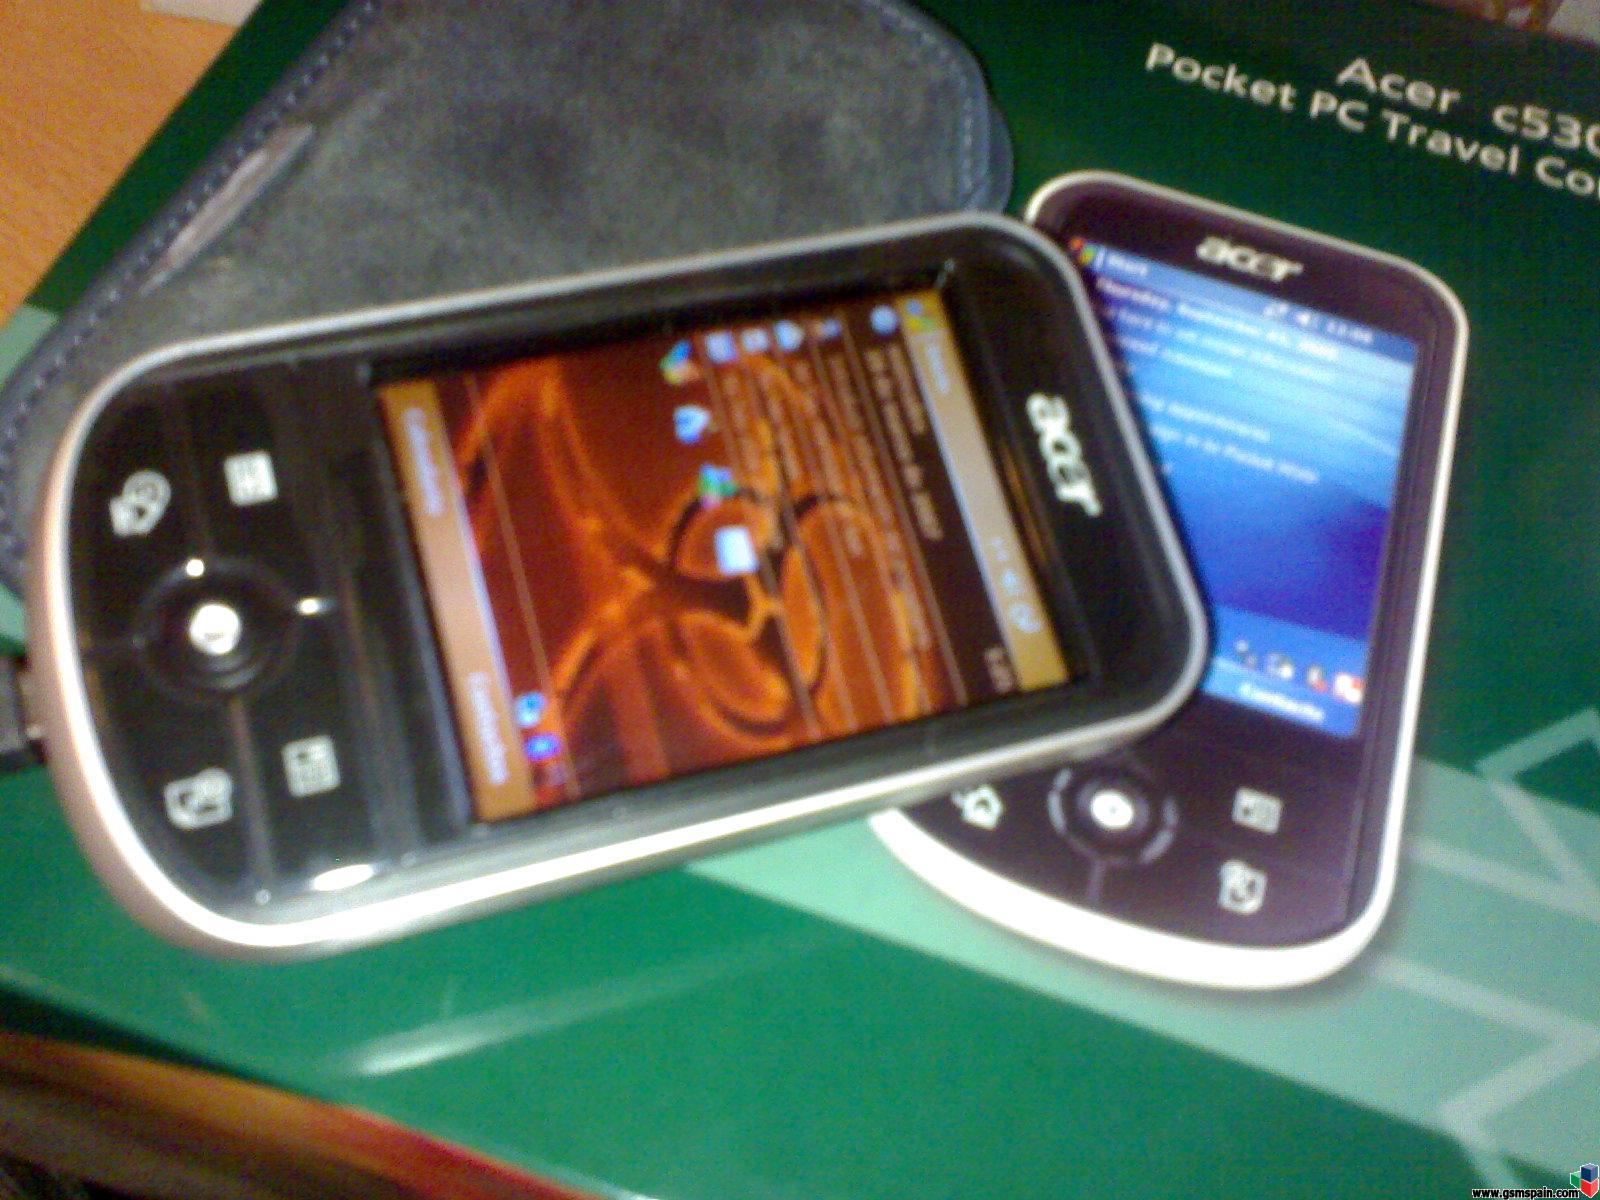 Pocket PC PDA Acer c530